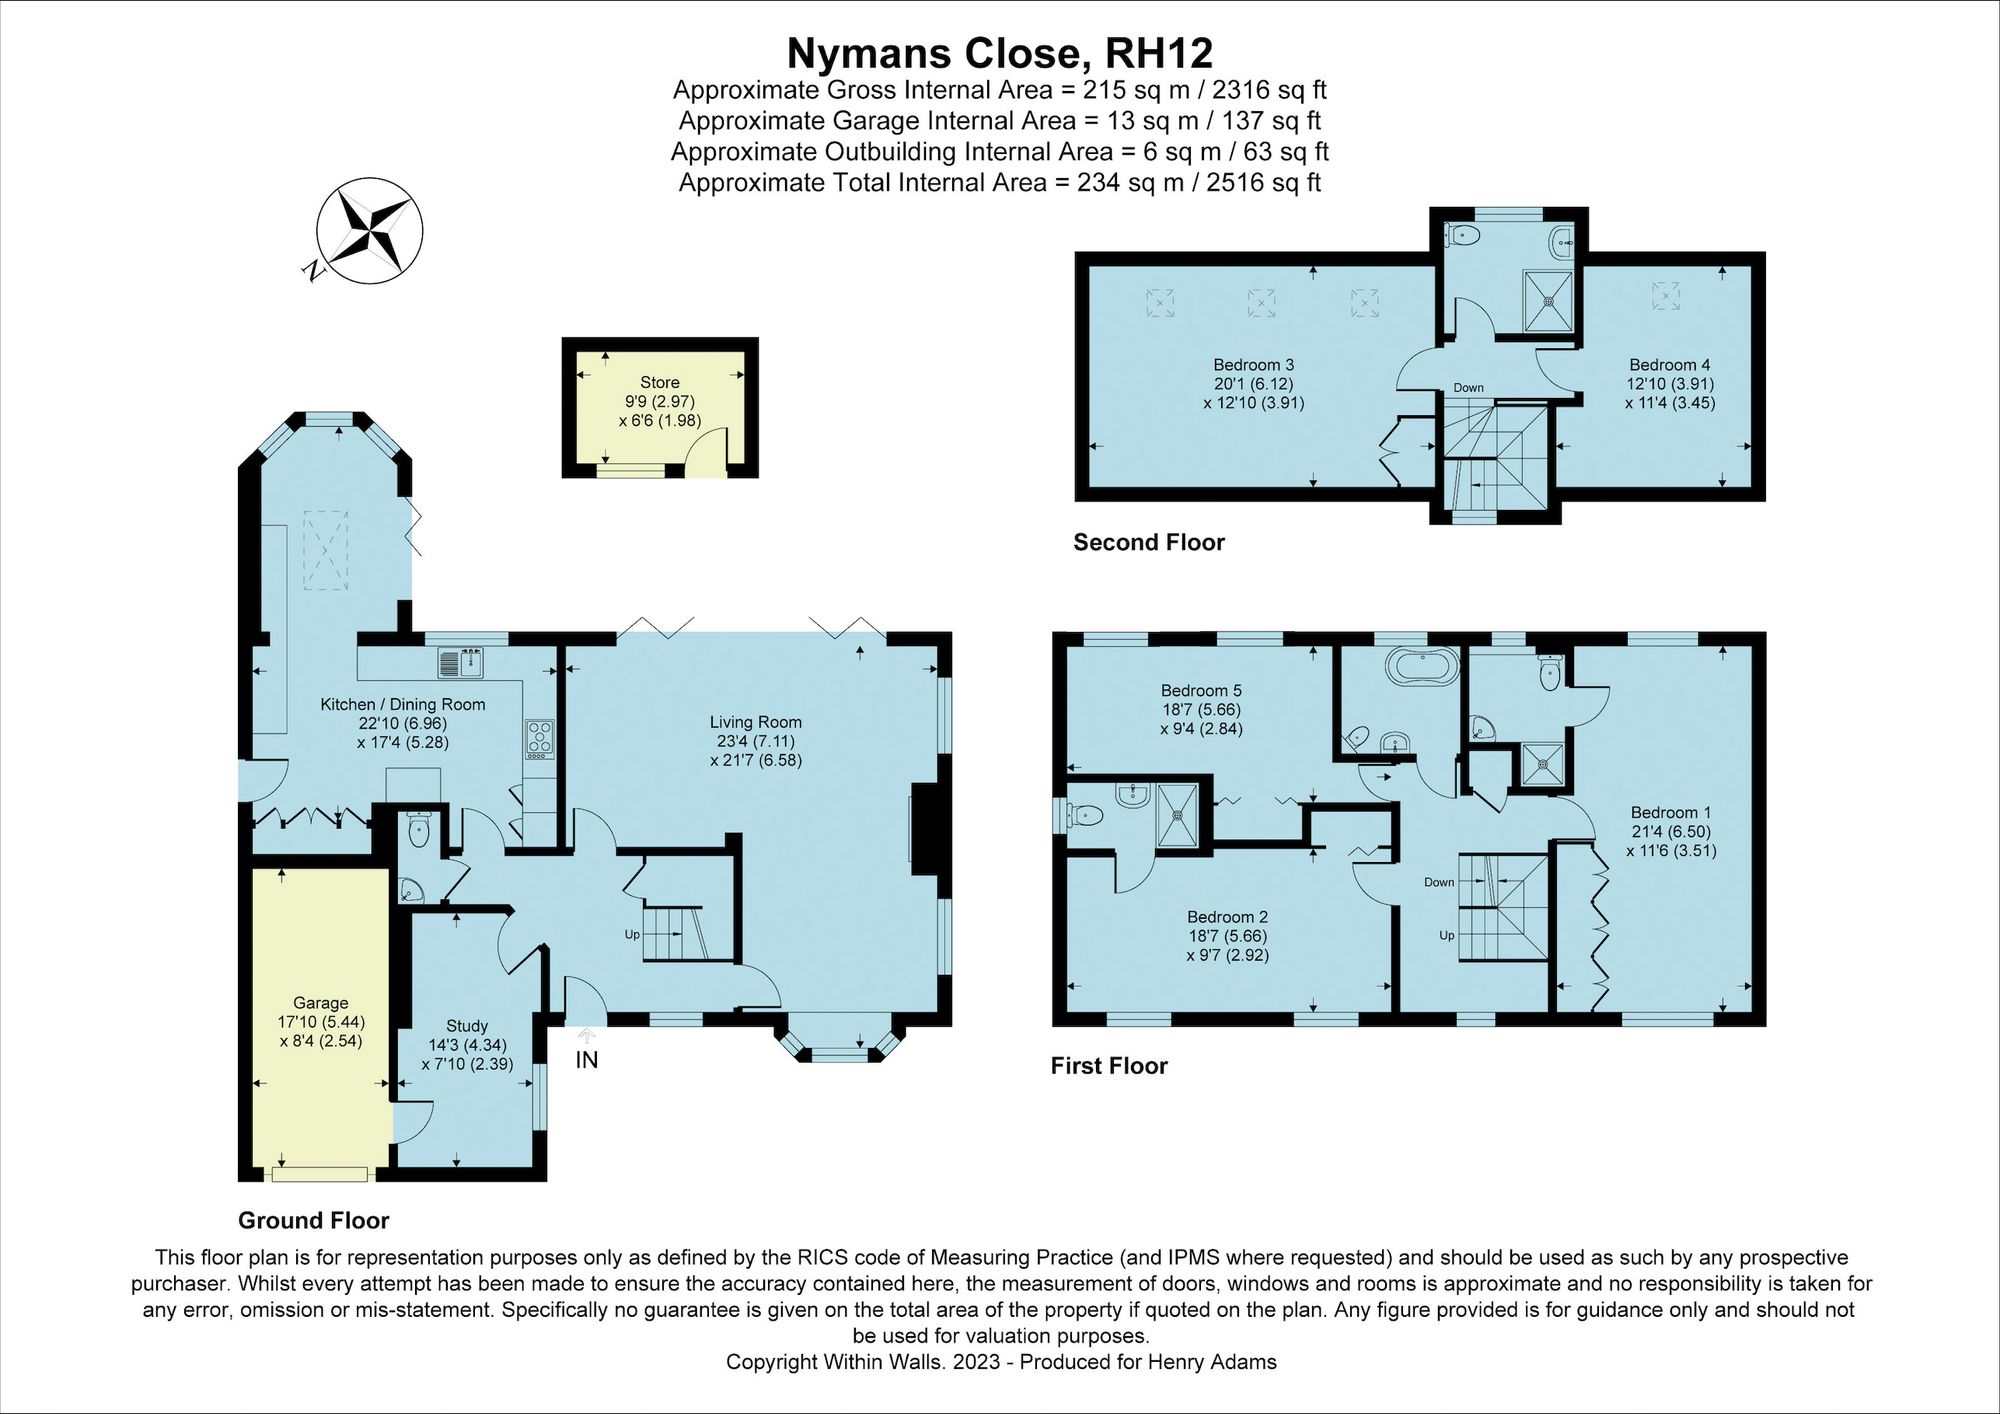 Nymans Close, Horsham, RH12 floorplans